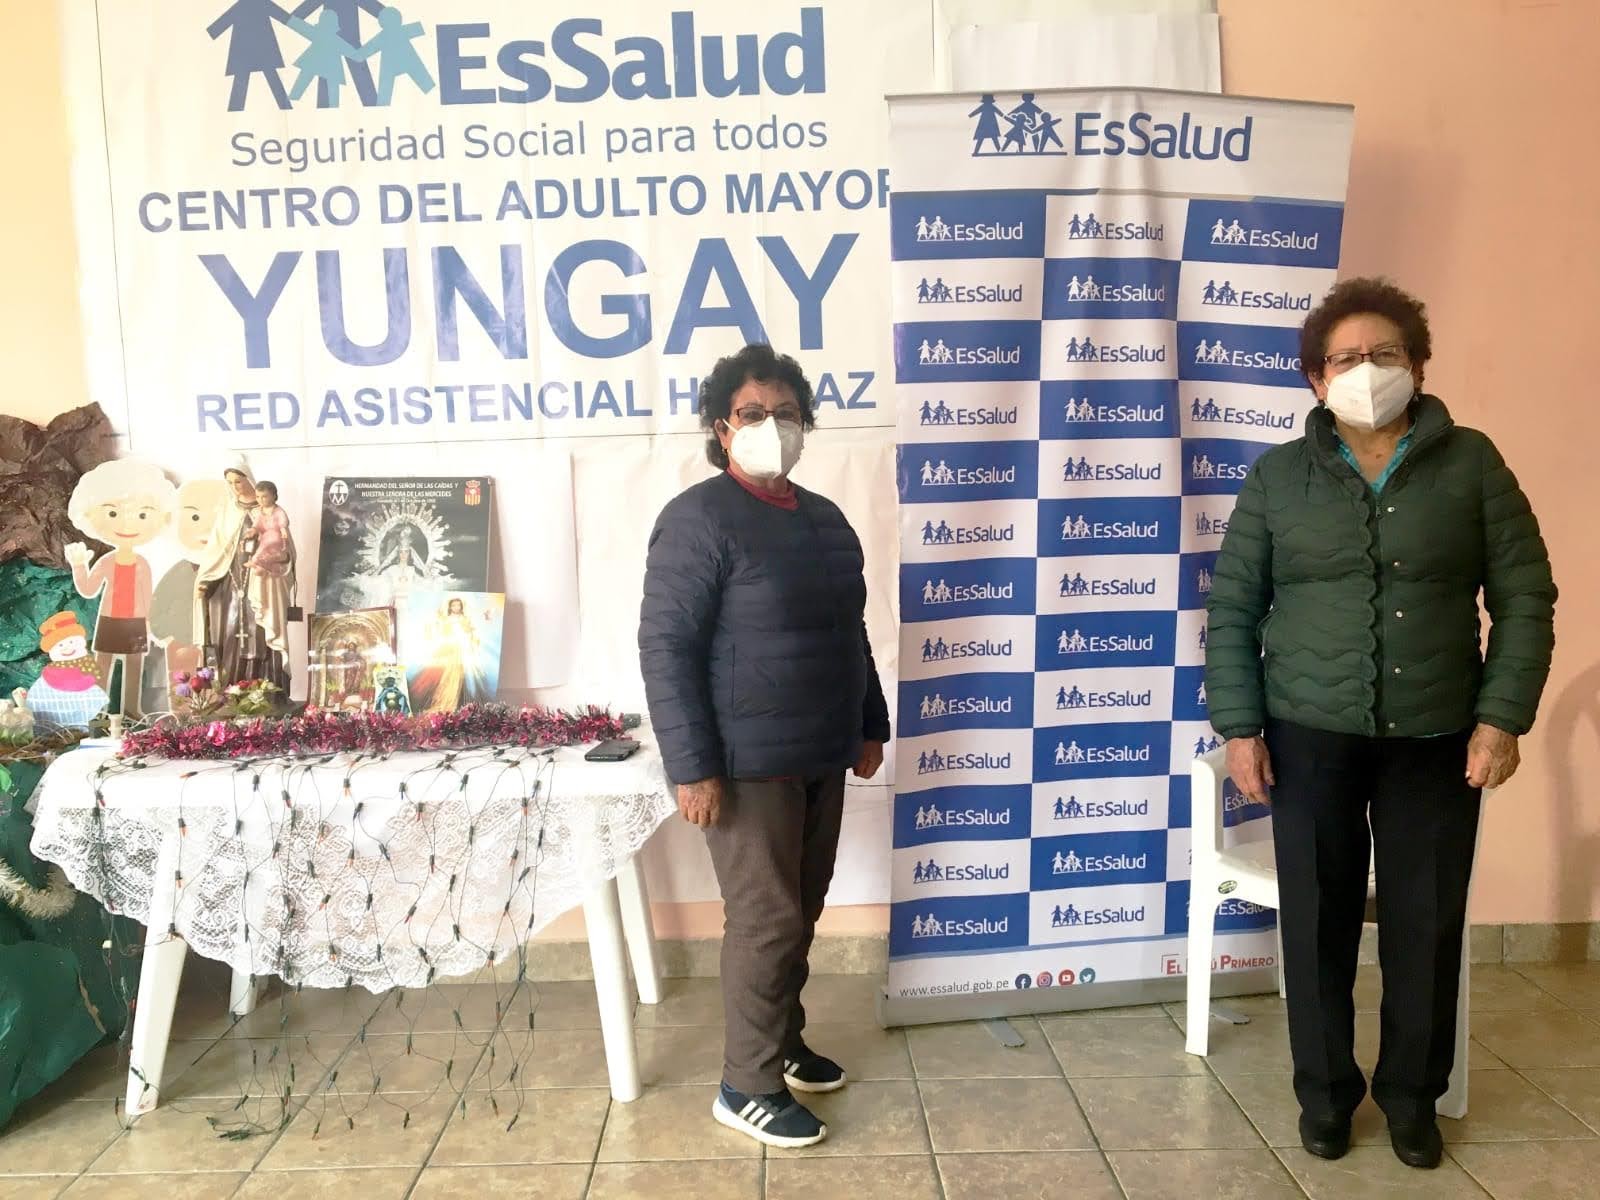 Essalud - Centros del adulto mayor de EsSalud Huaraz reinician actividades presenciales